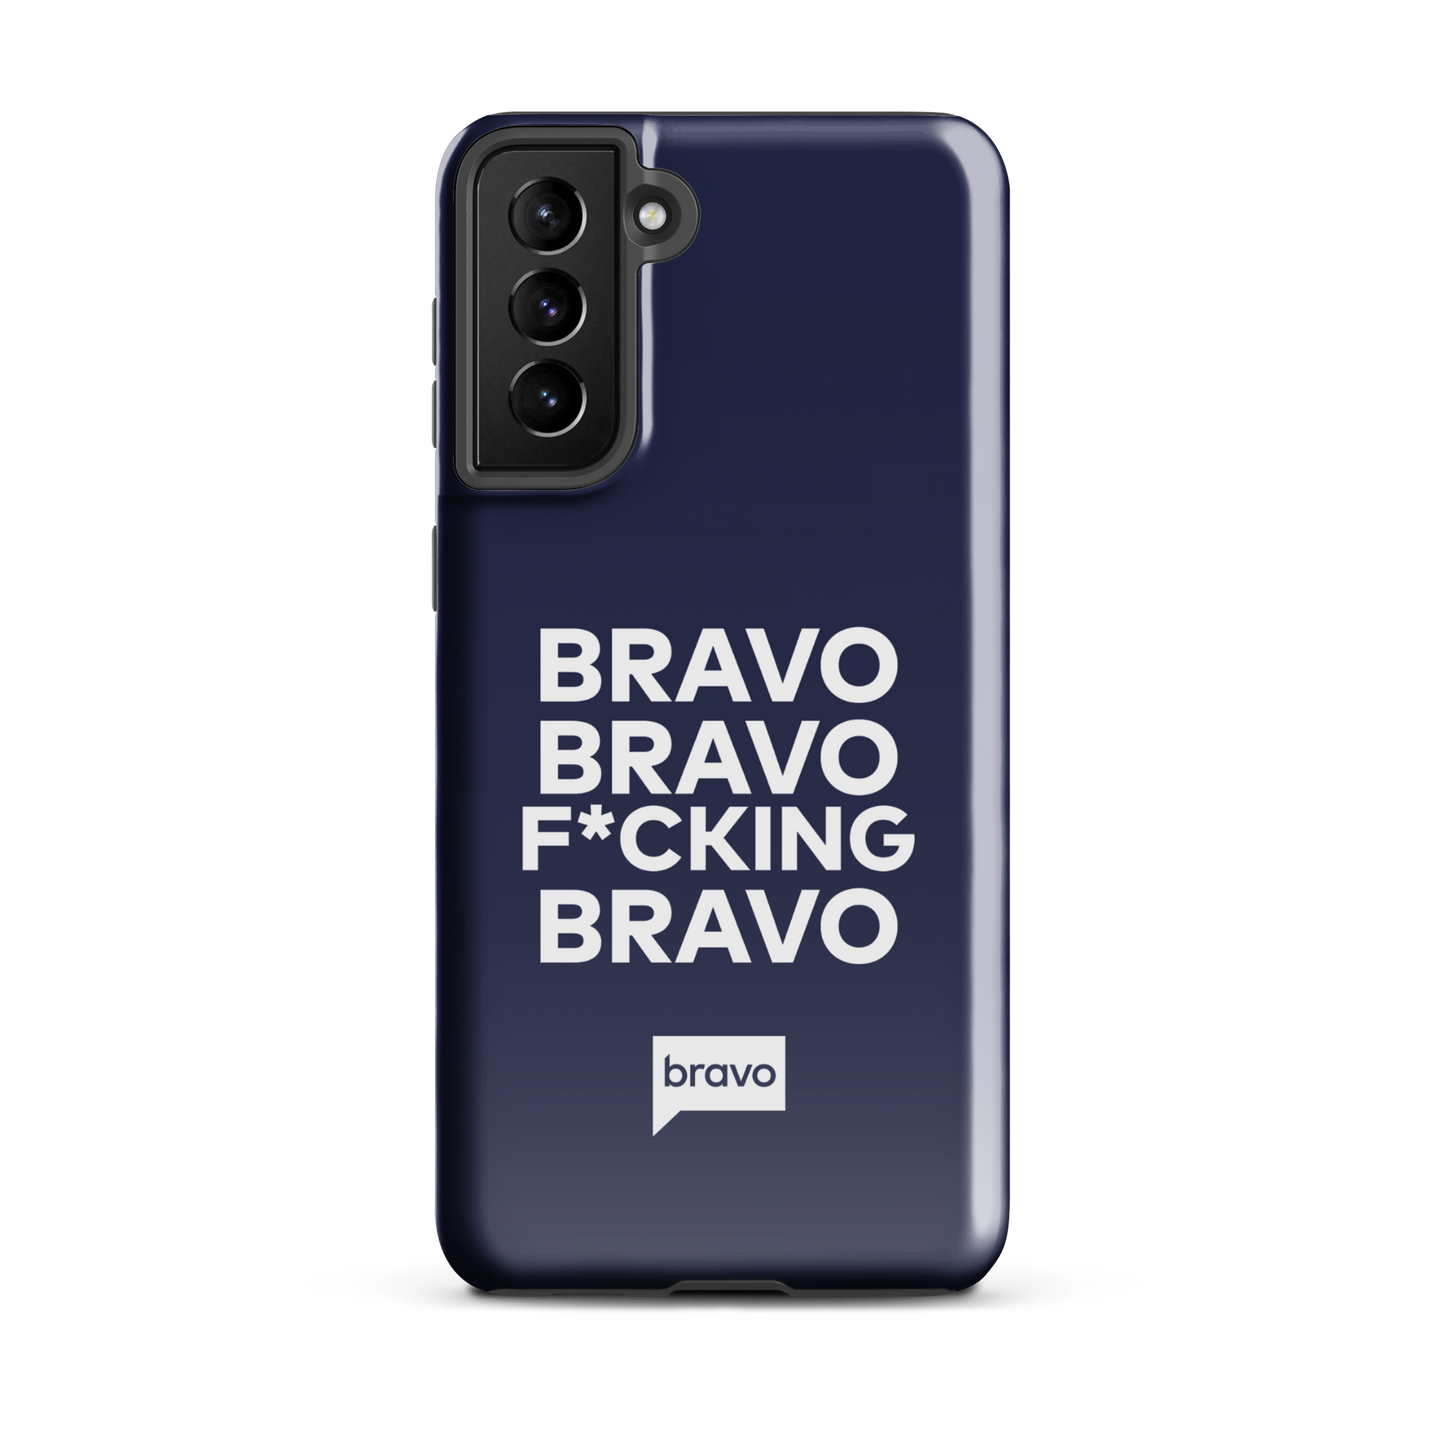 Bravo Gear Bravo Bravo F*cking Bravo Tough Phone Case - Samsung